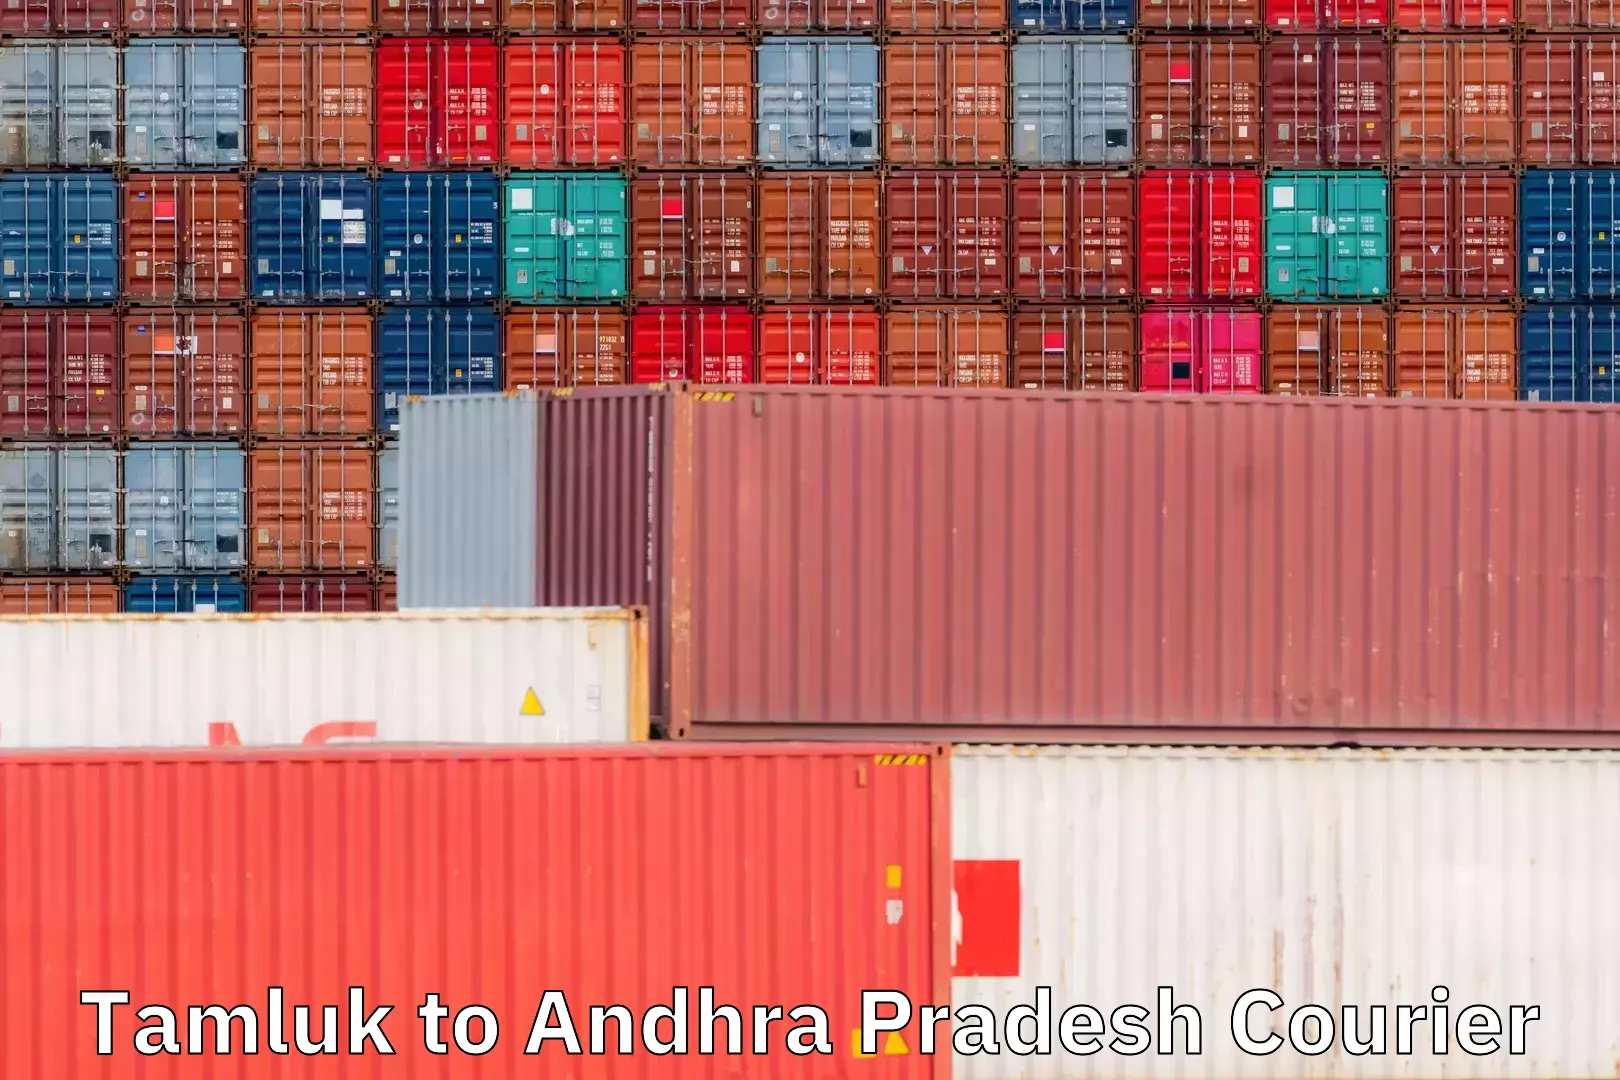 Same-day delivery options Tamluk to Andhra Pradesh